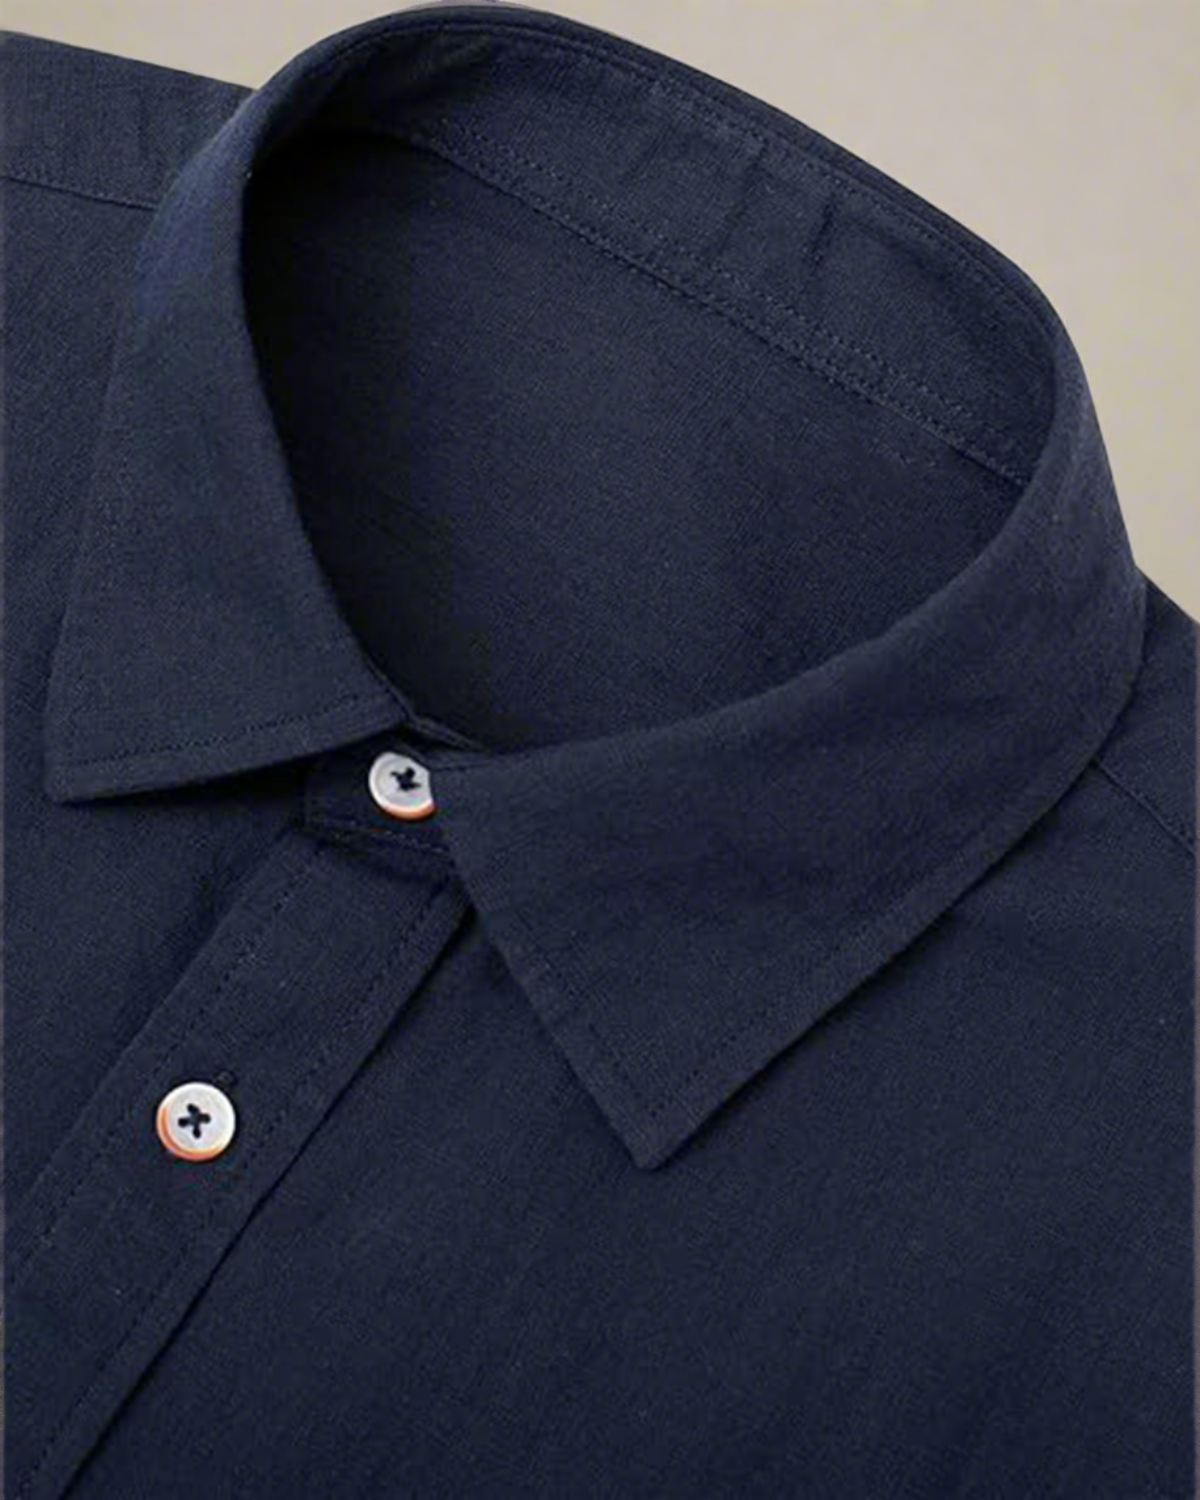 men-short-sleeve-navy-shirt-with-buttons-cotton-linen-blend-2